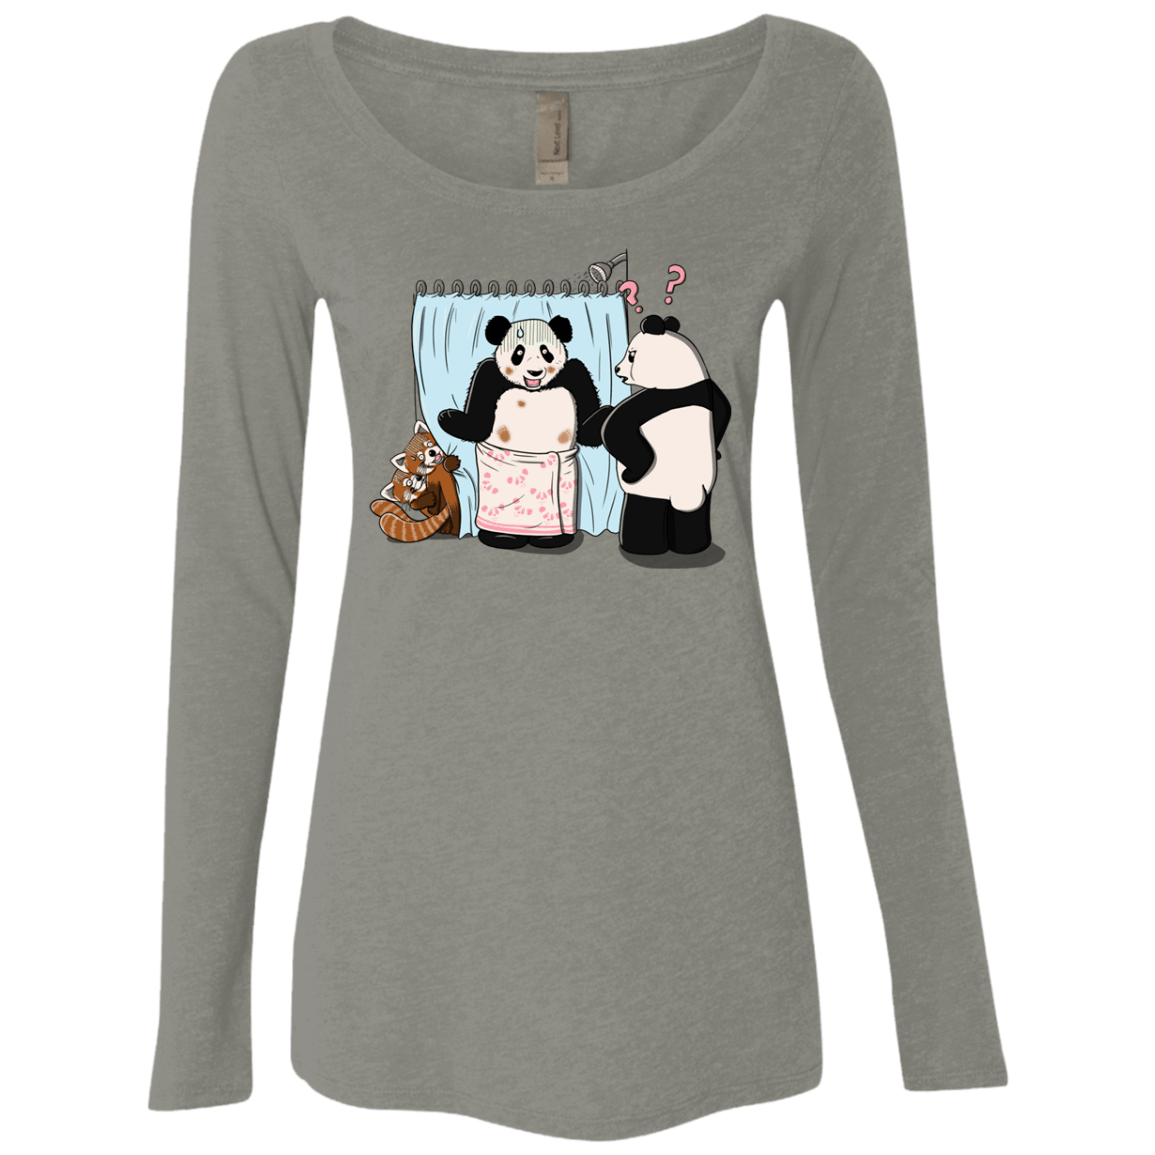 T-Shirts Venetian Grey / S Panda Infidelity Women's Triblend Long Sleeve Shirt